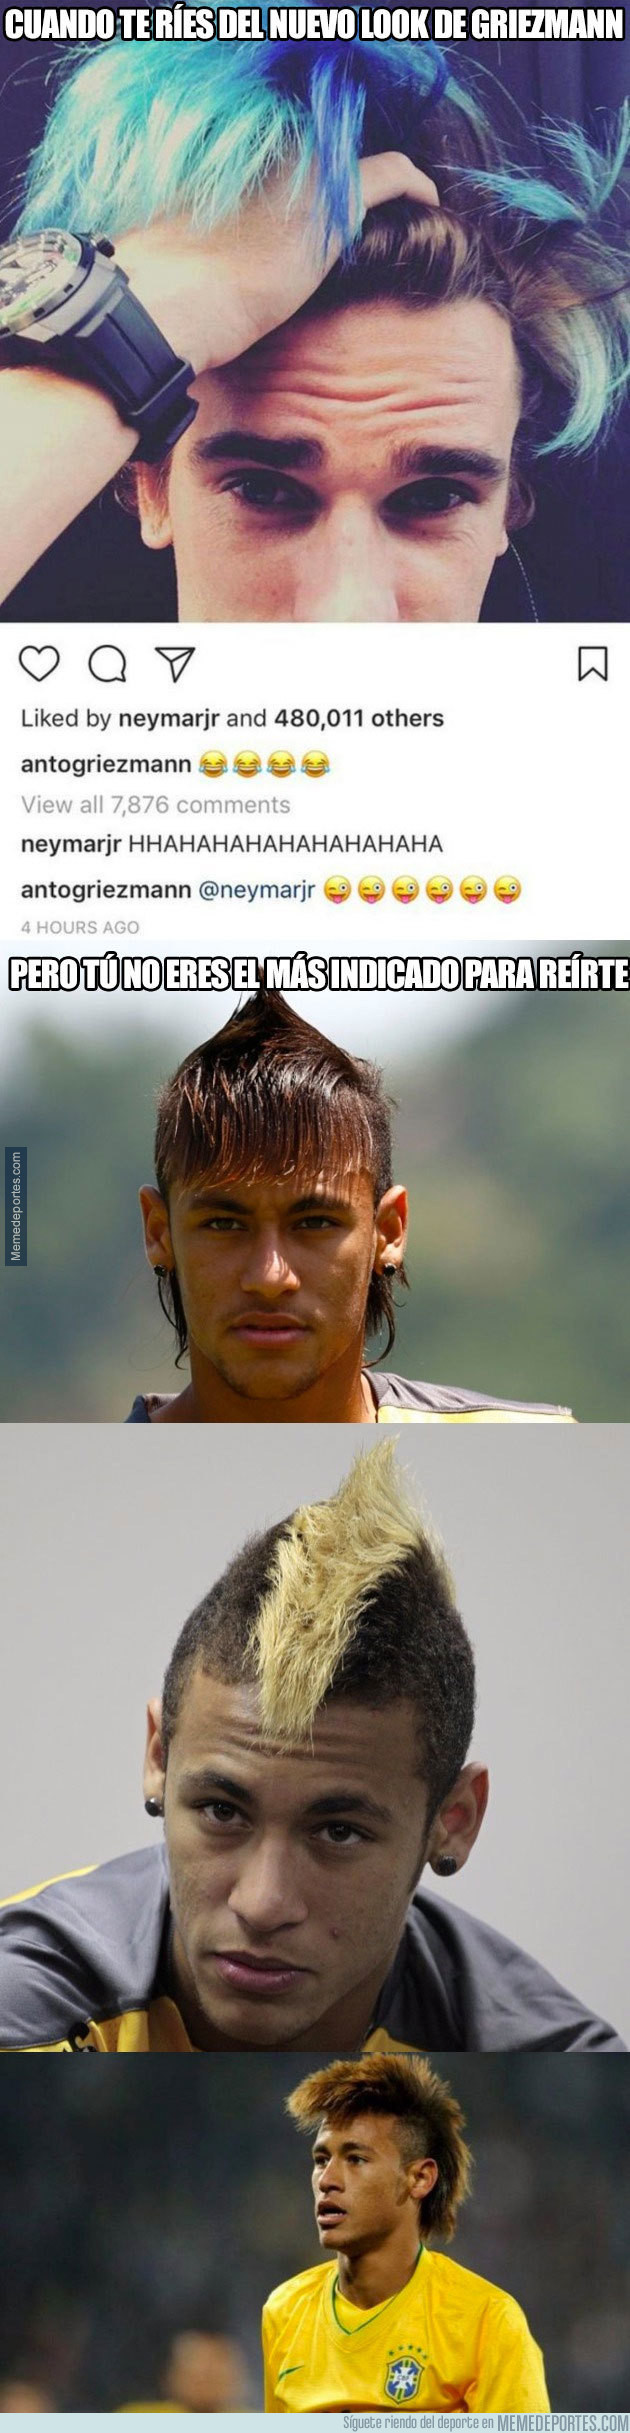 982904 - Neymar se ríe en Instagram del nuevo 'look' de Griezmann